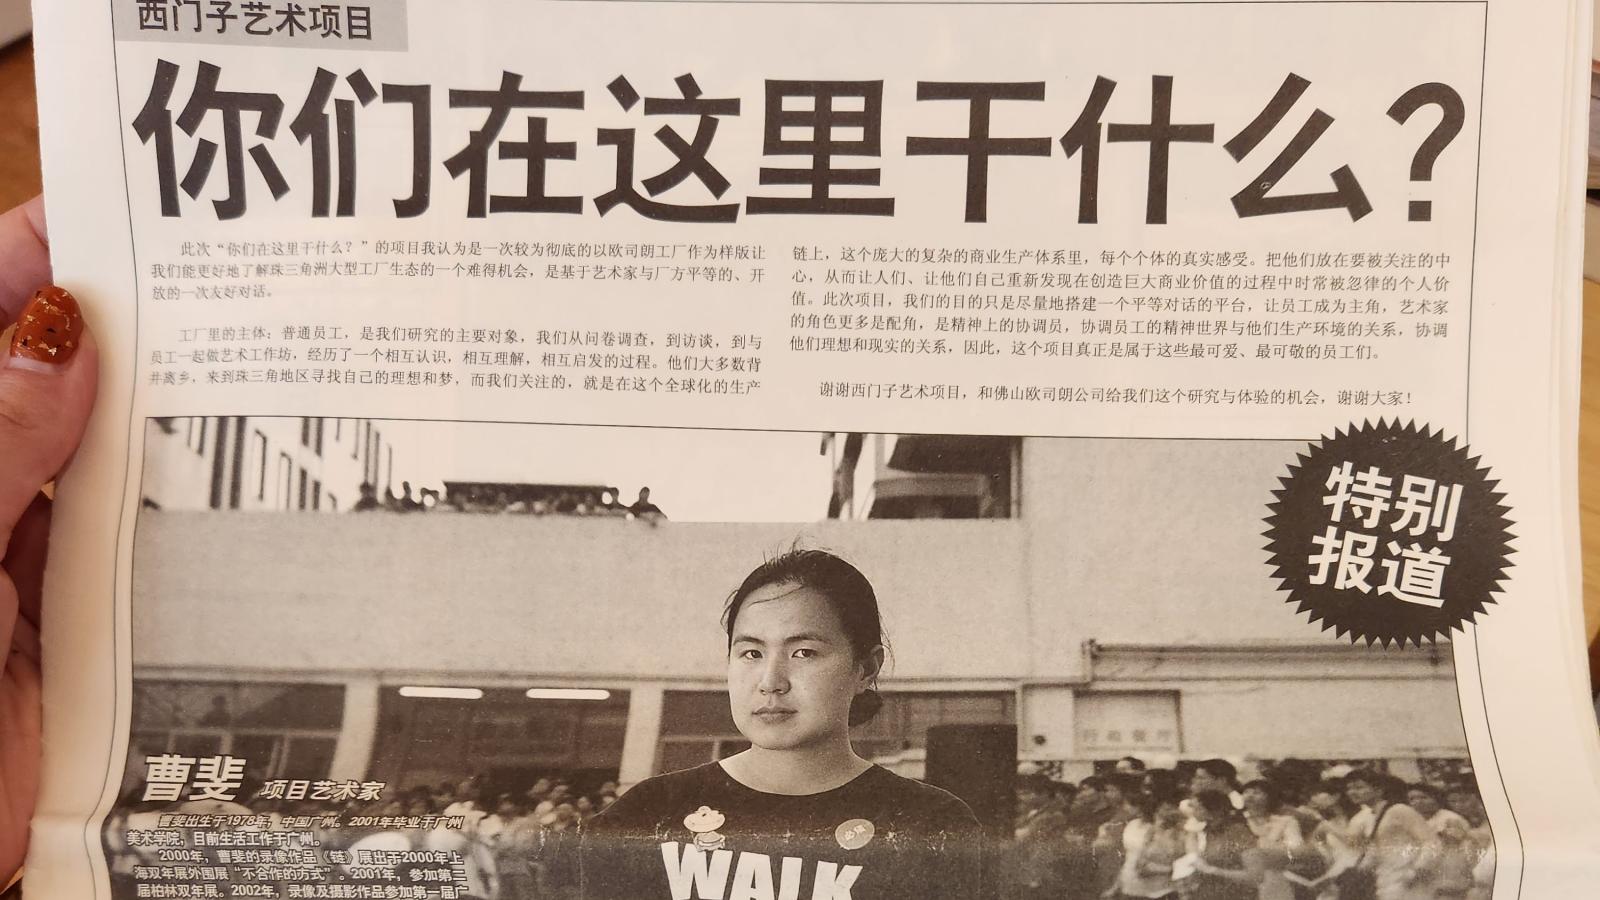 Cao Fei "Whose Utopia" newspaper